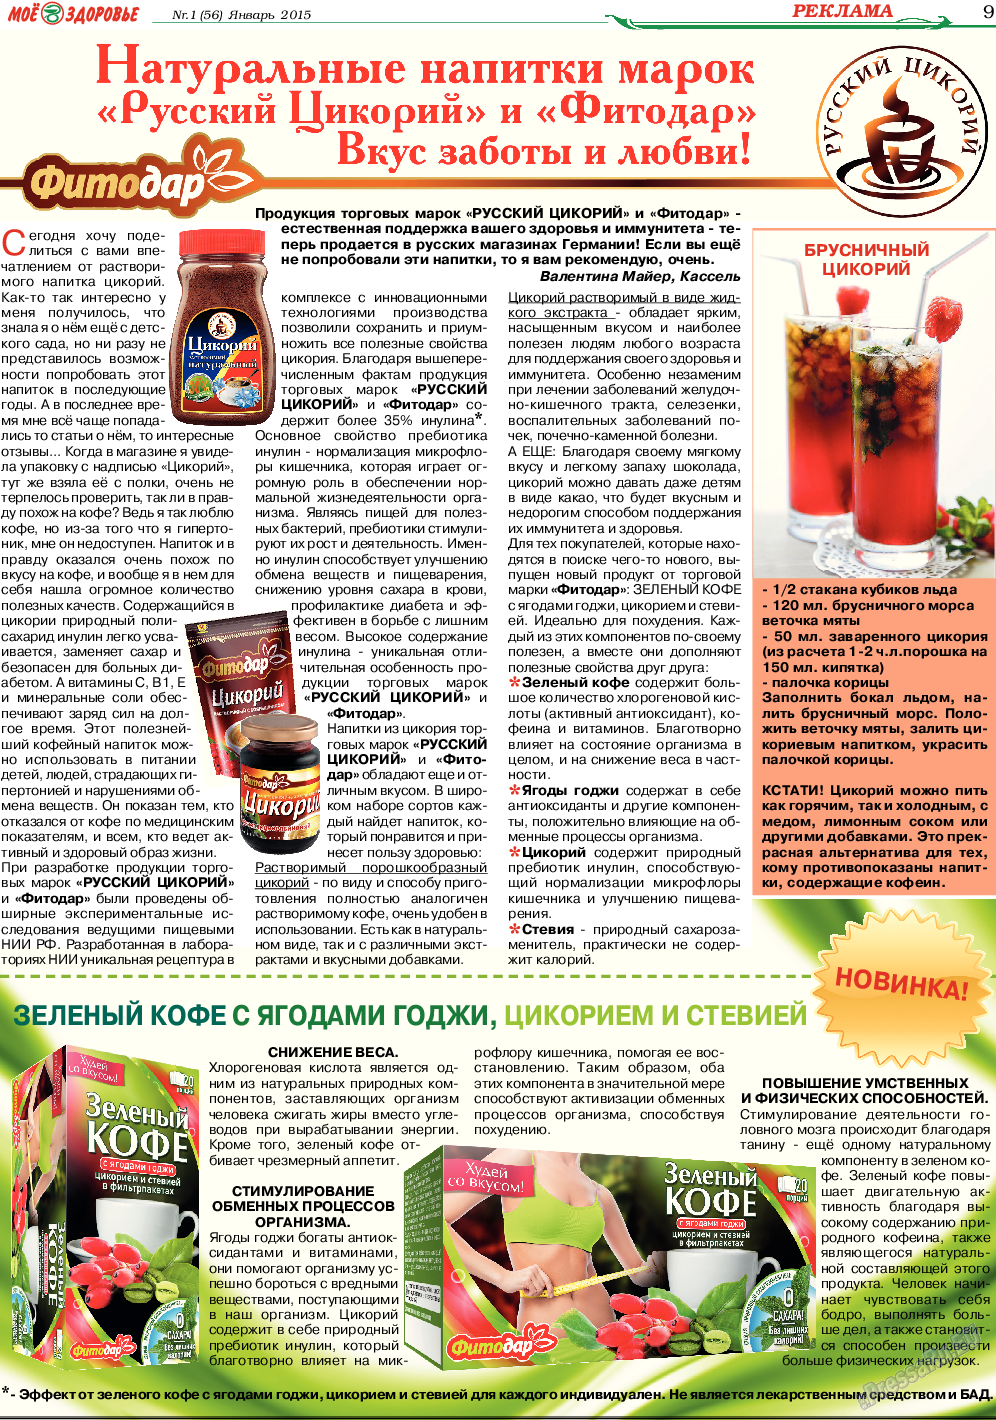 Кругозор (газета). 2015 год, номер 1, стр. 9